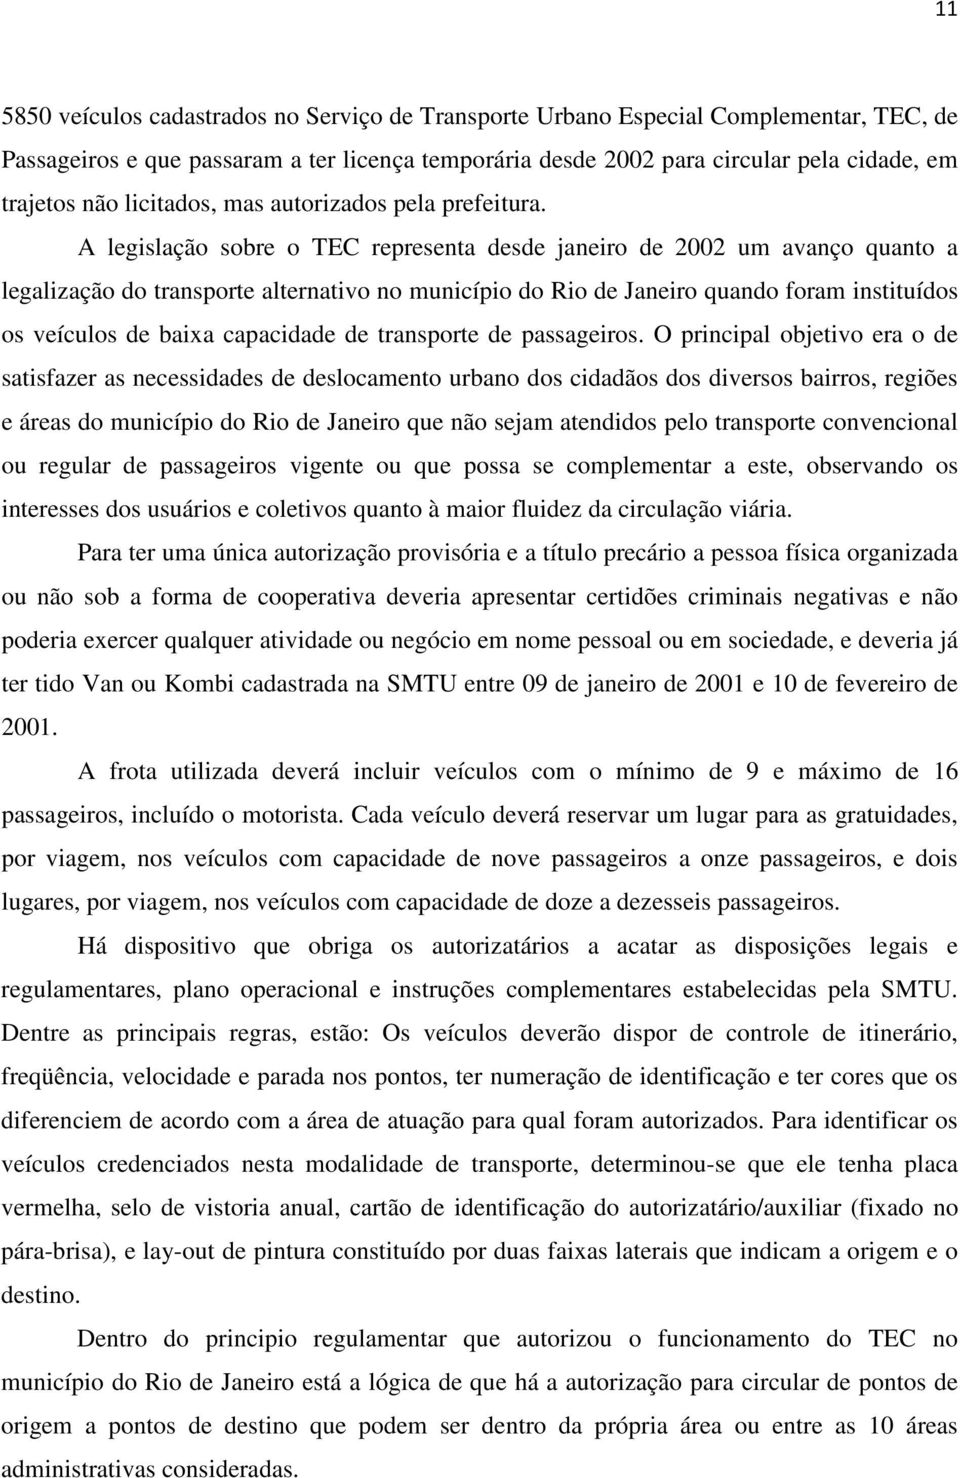 A legislação sobre o TEC representa desde janeiro de 2002 um avanço quanto a legalização do transporte alternativo no município do Rio de Janeiro quando foram instituídos os veículos de baixa